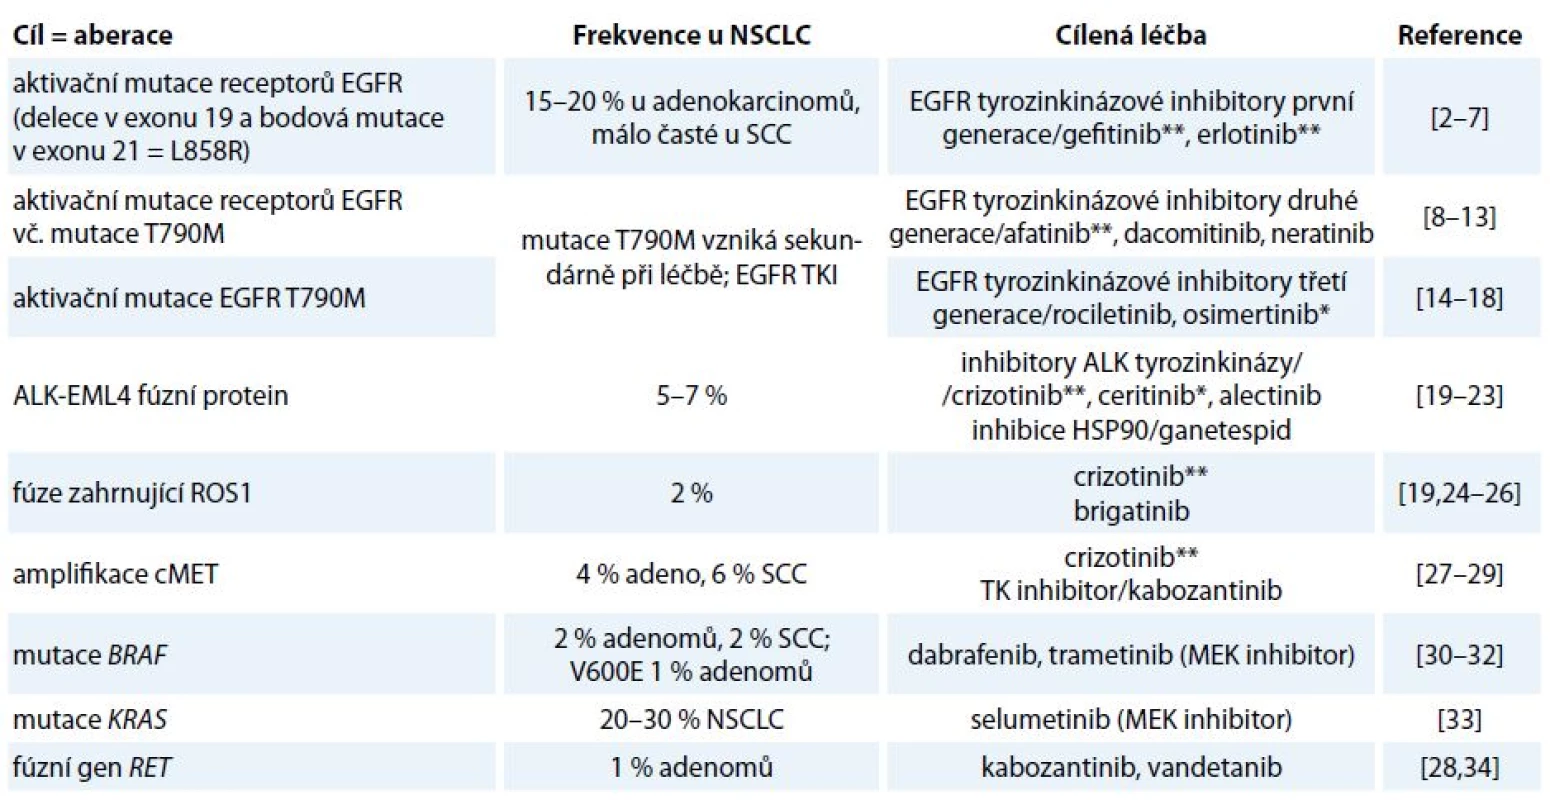 Nejčastější dosud známé aberace u NSCLC jako cíle stávající a potencionální protinádorové terapie.